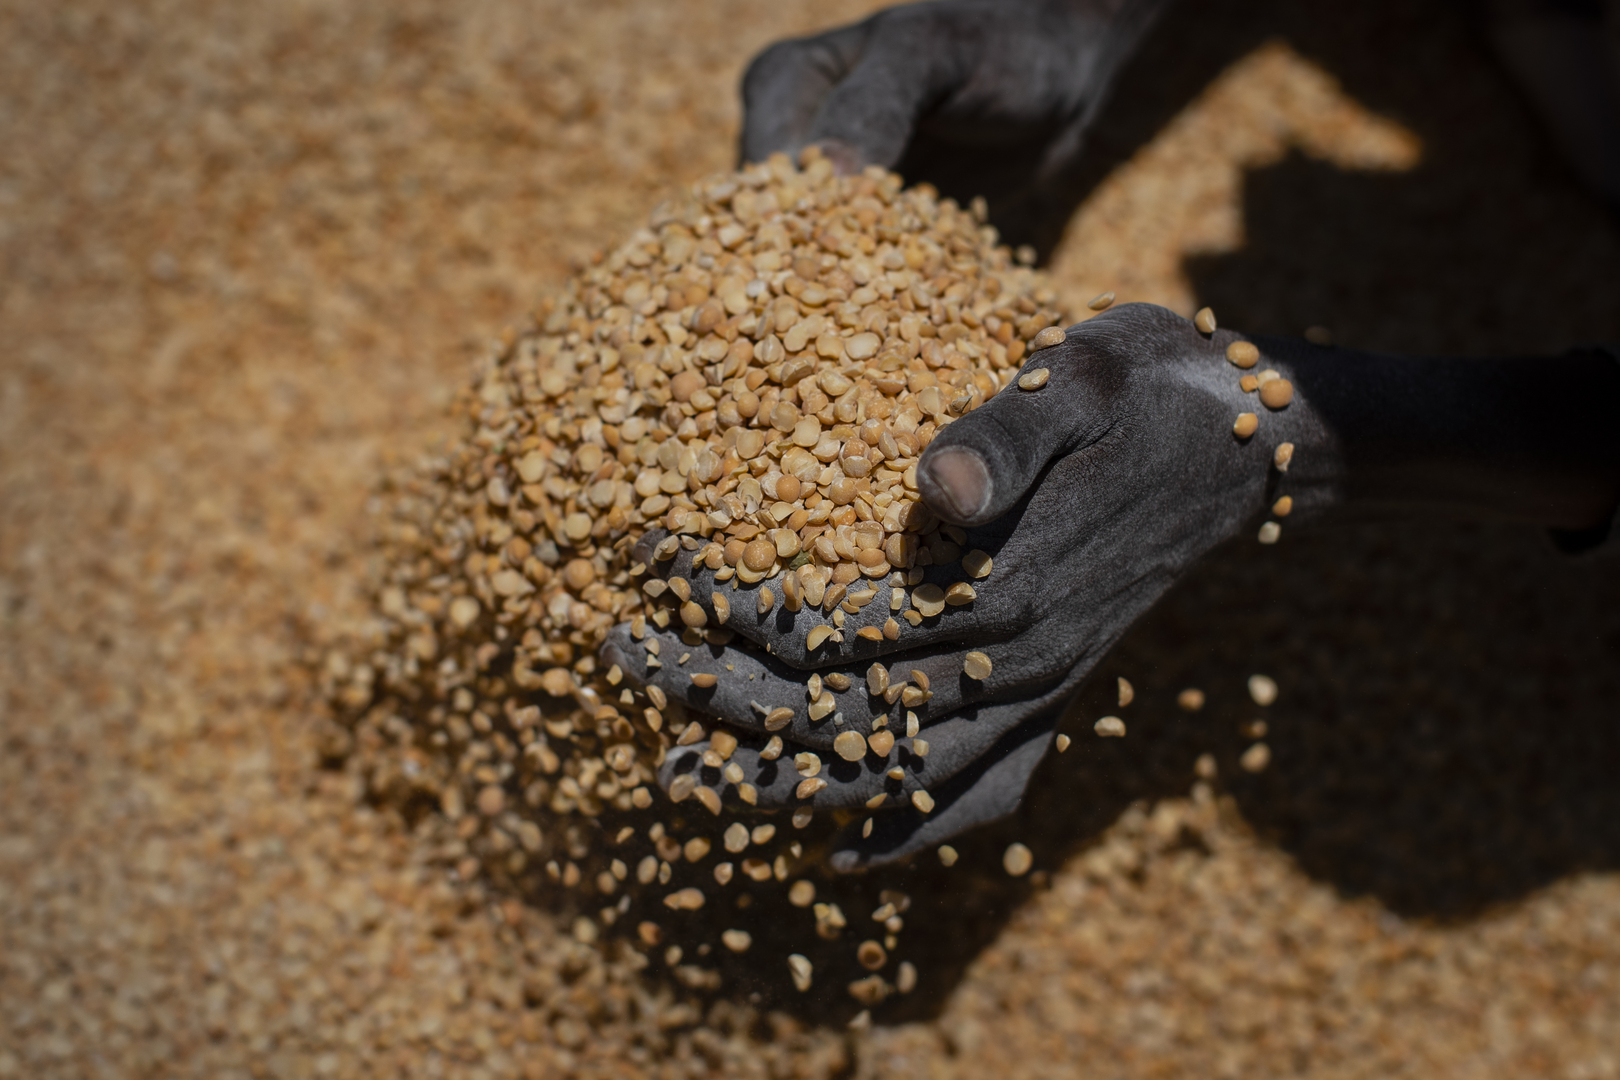 برنامج الأغذية العالمي يسعى لوصول مساعداته إلى 3 ملايين إثيوبي يعانون الجوع